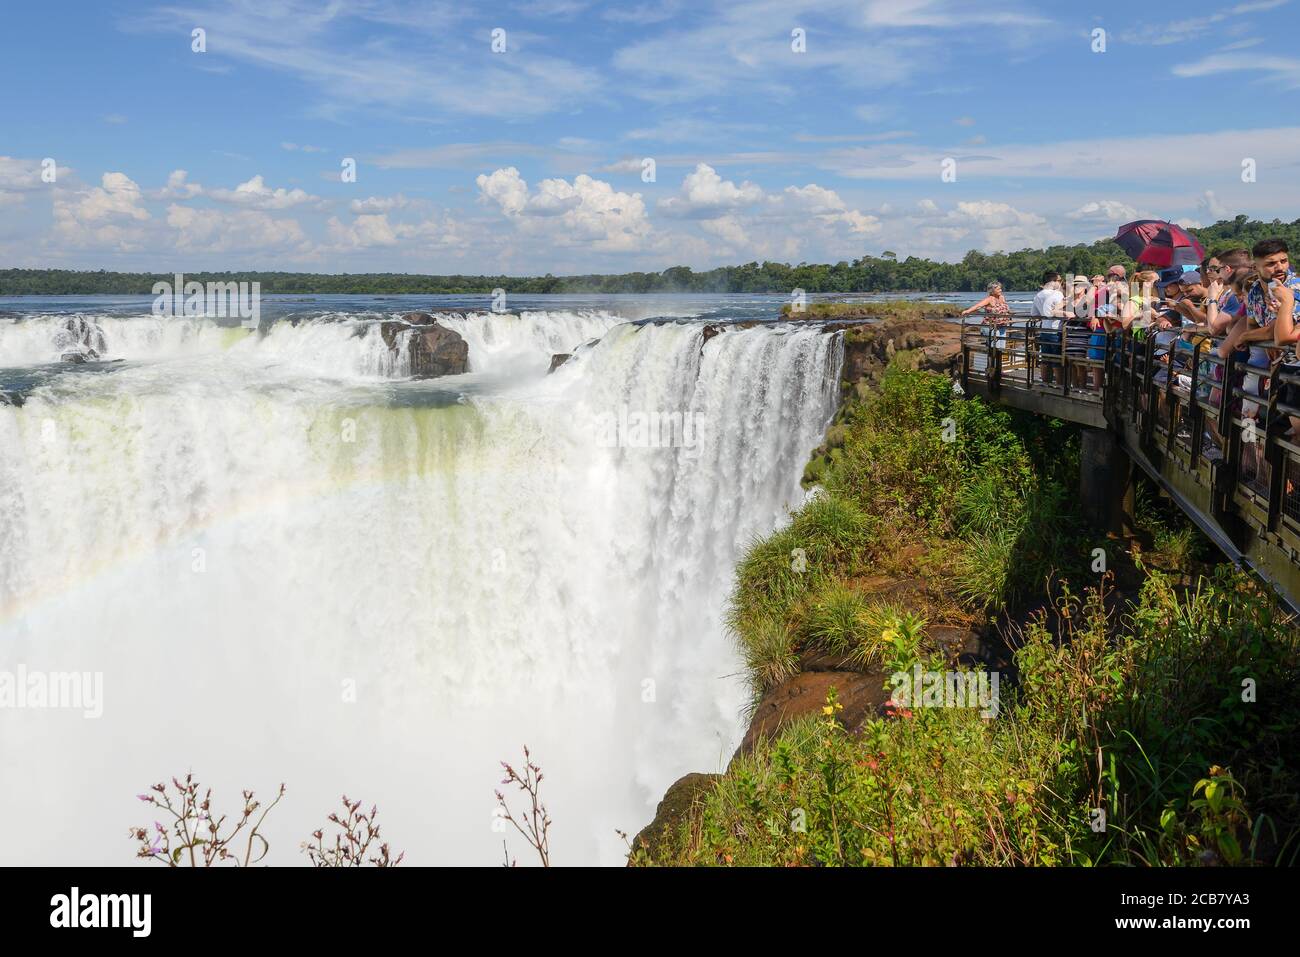 Touristes visitant la chute d'eau du diable à Iguazu Falls, à la frontière du Brésil et de l'Argentine, depuis le parc national d'Iguazu, dans le côté argentin. Banque D'Images